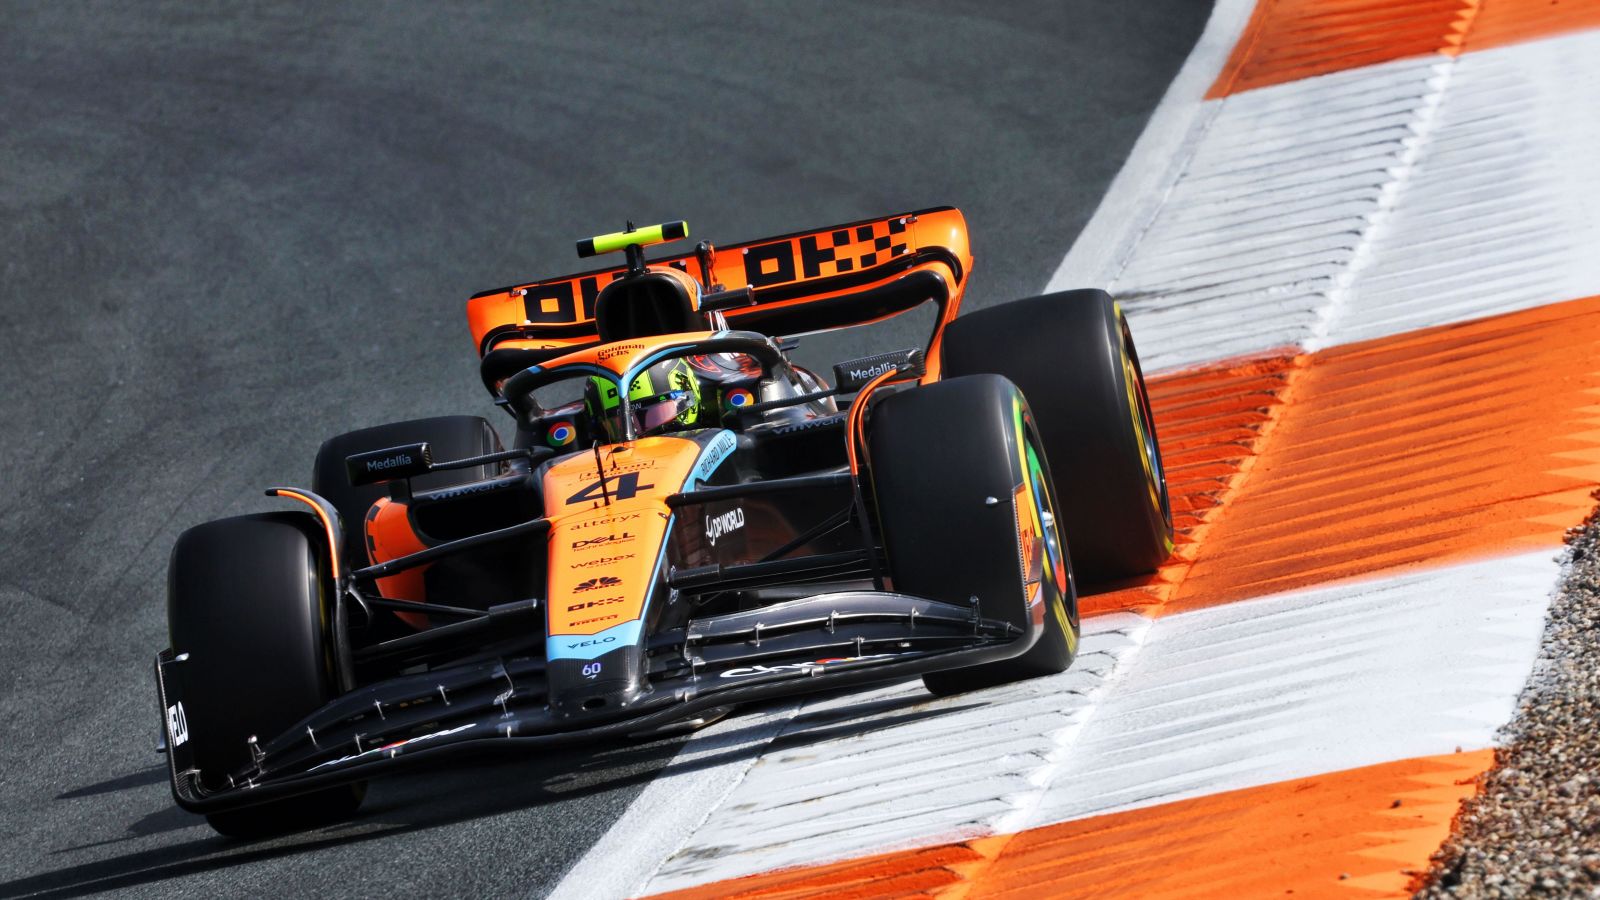 Lando Norris (McLaren) rounds the last corner in Dutch Grand Prix practice at Zandvoort.